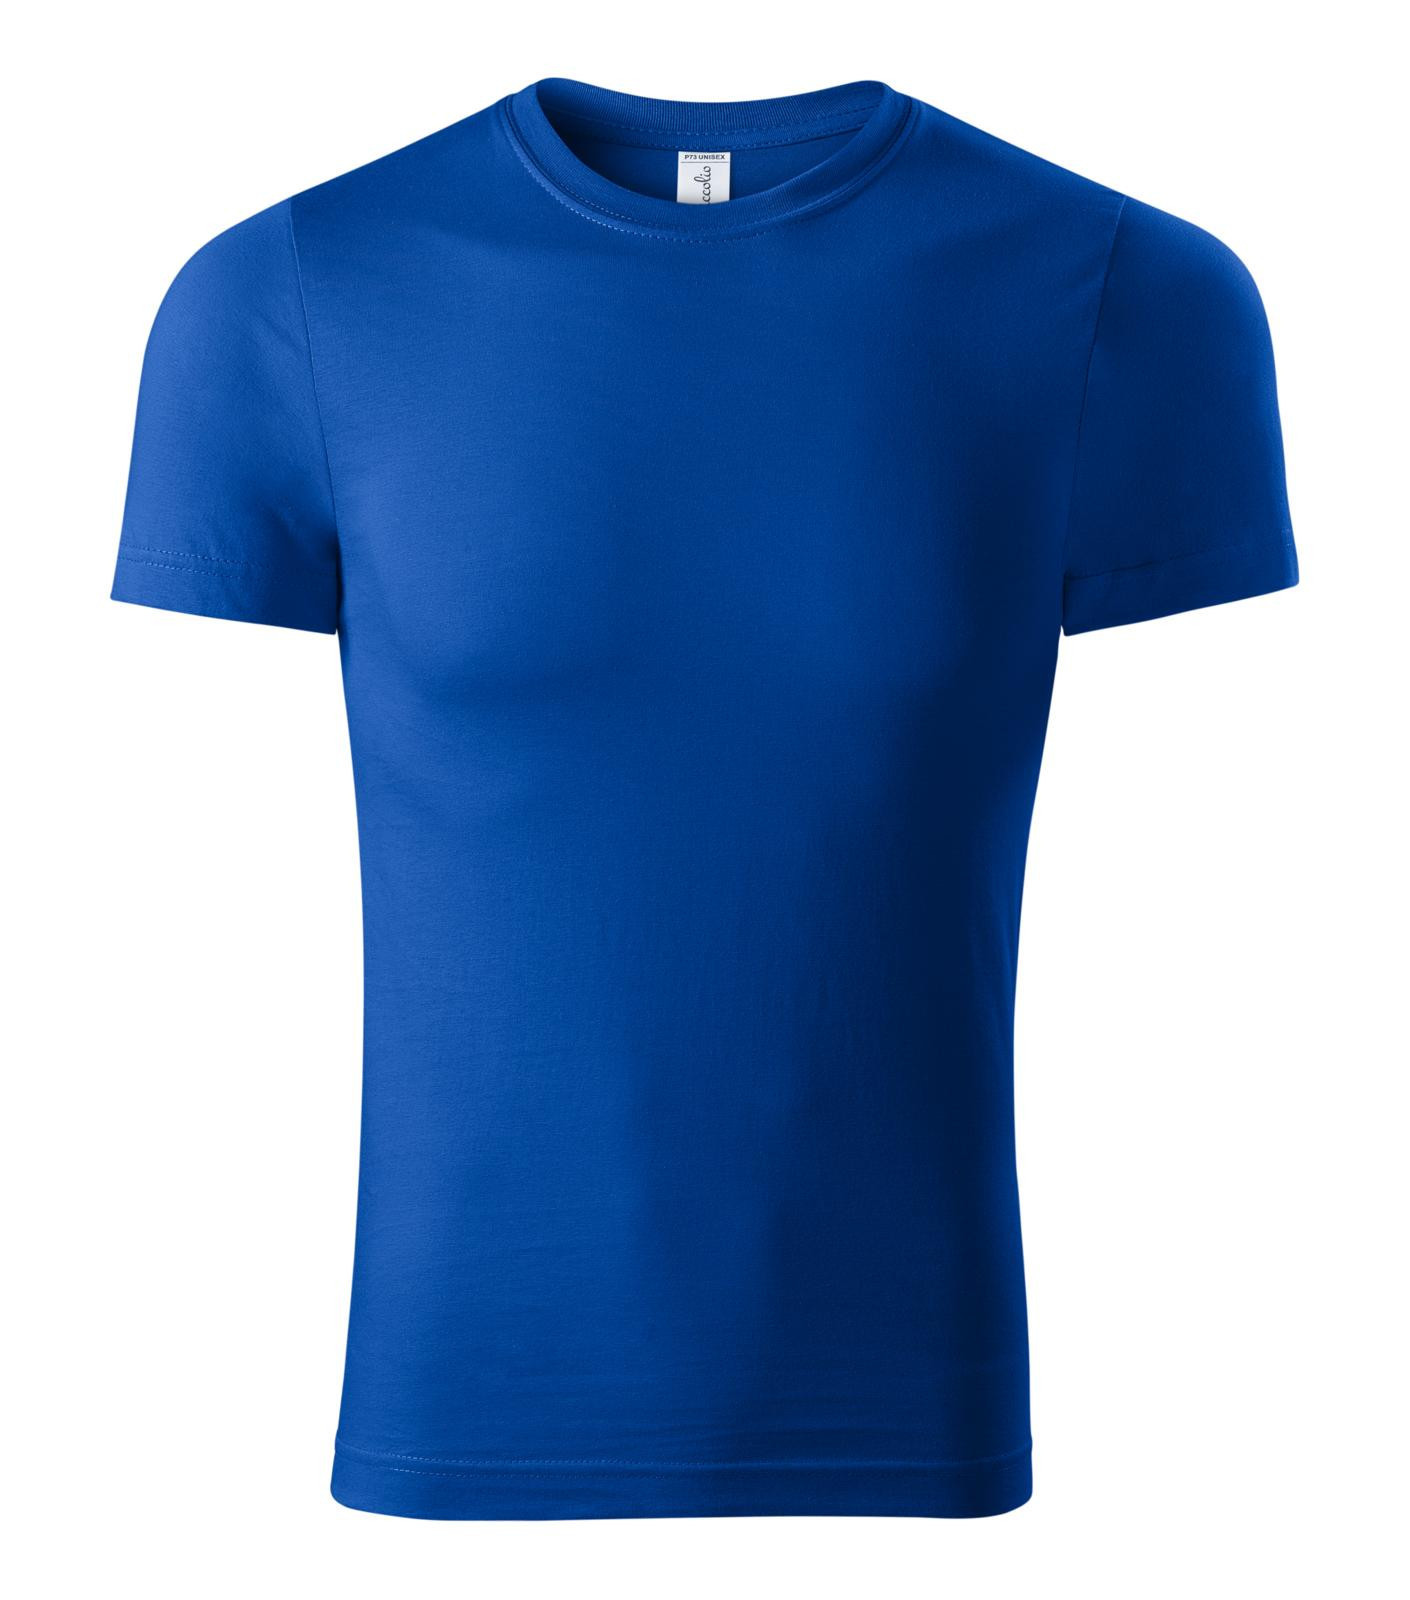 Unisex tričko Piccolio Paint P73 - veľkosť: M, farba: kráľovská modrá